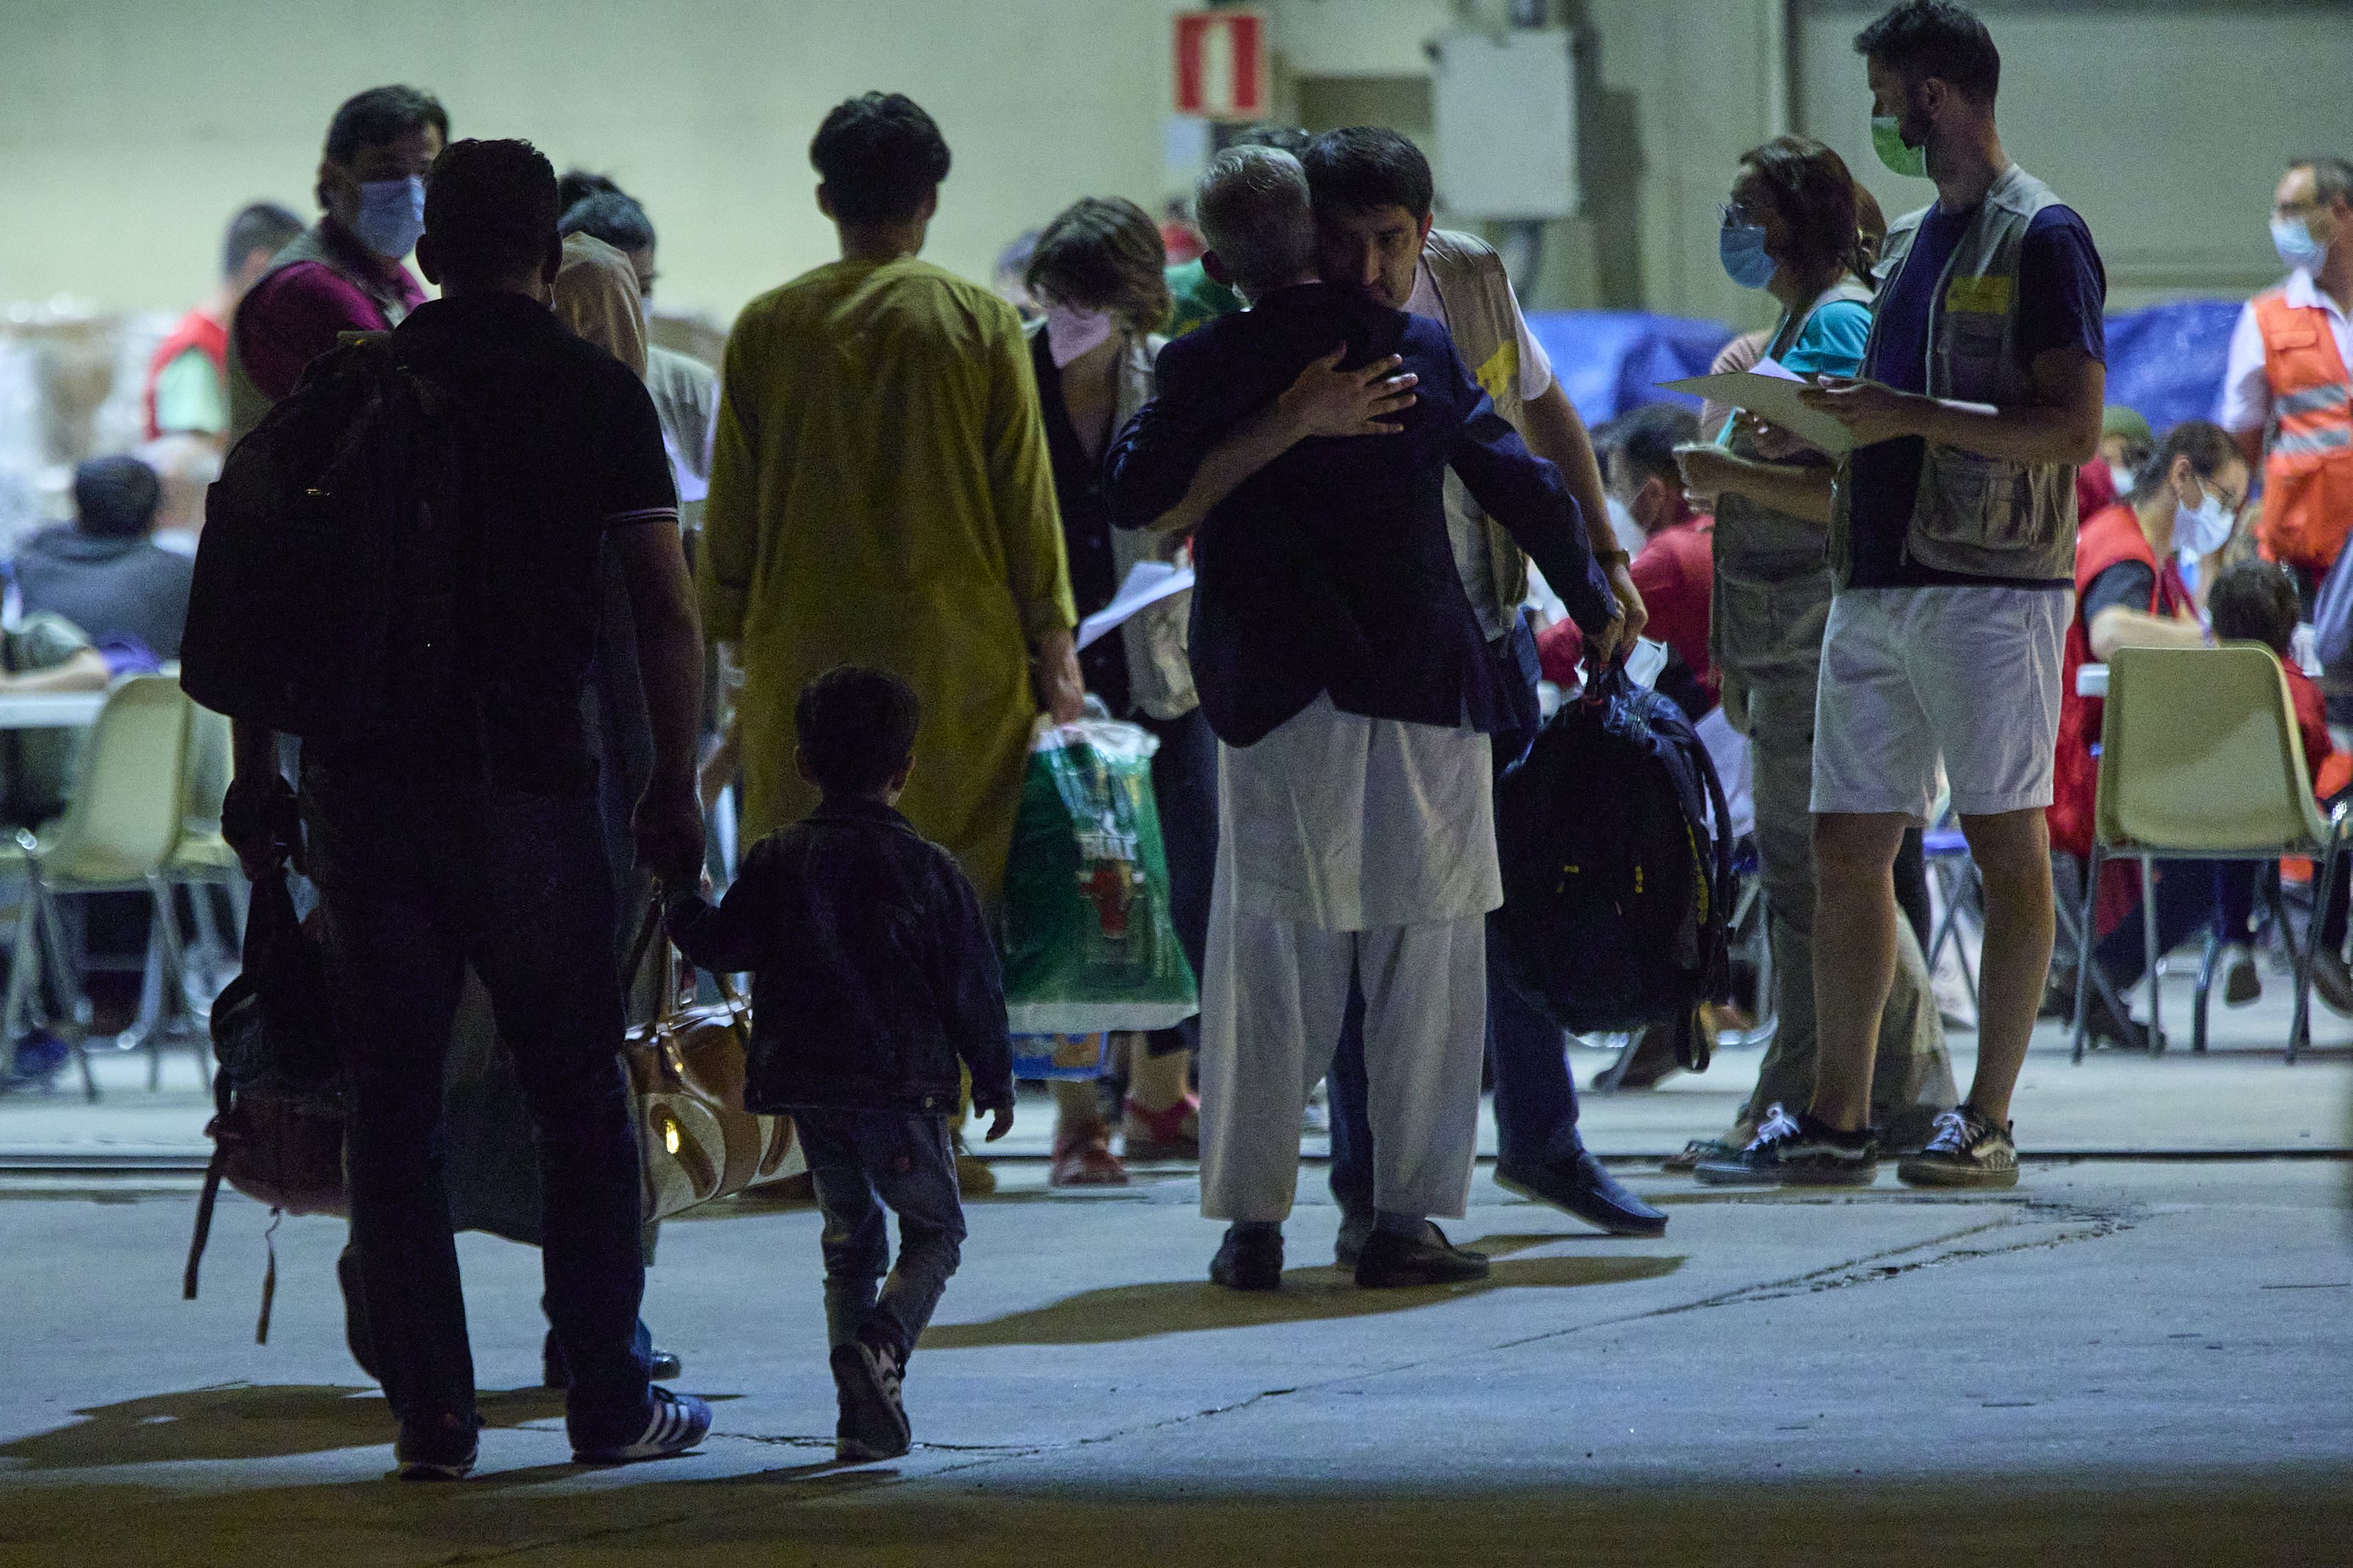 Vox contra els refugiats afganesos: demanen vigilar-los per evitar gihadistes